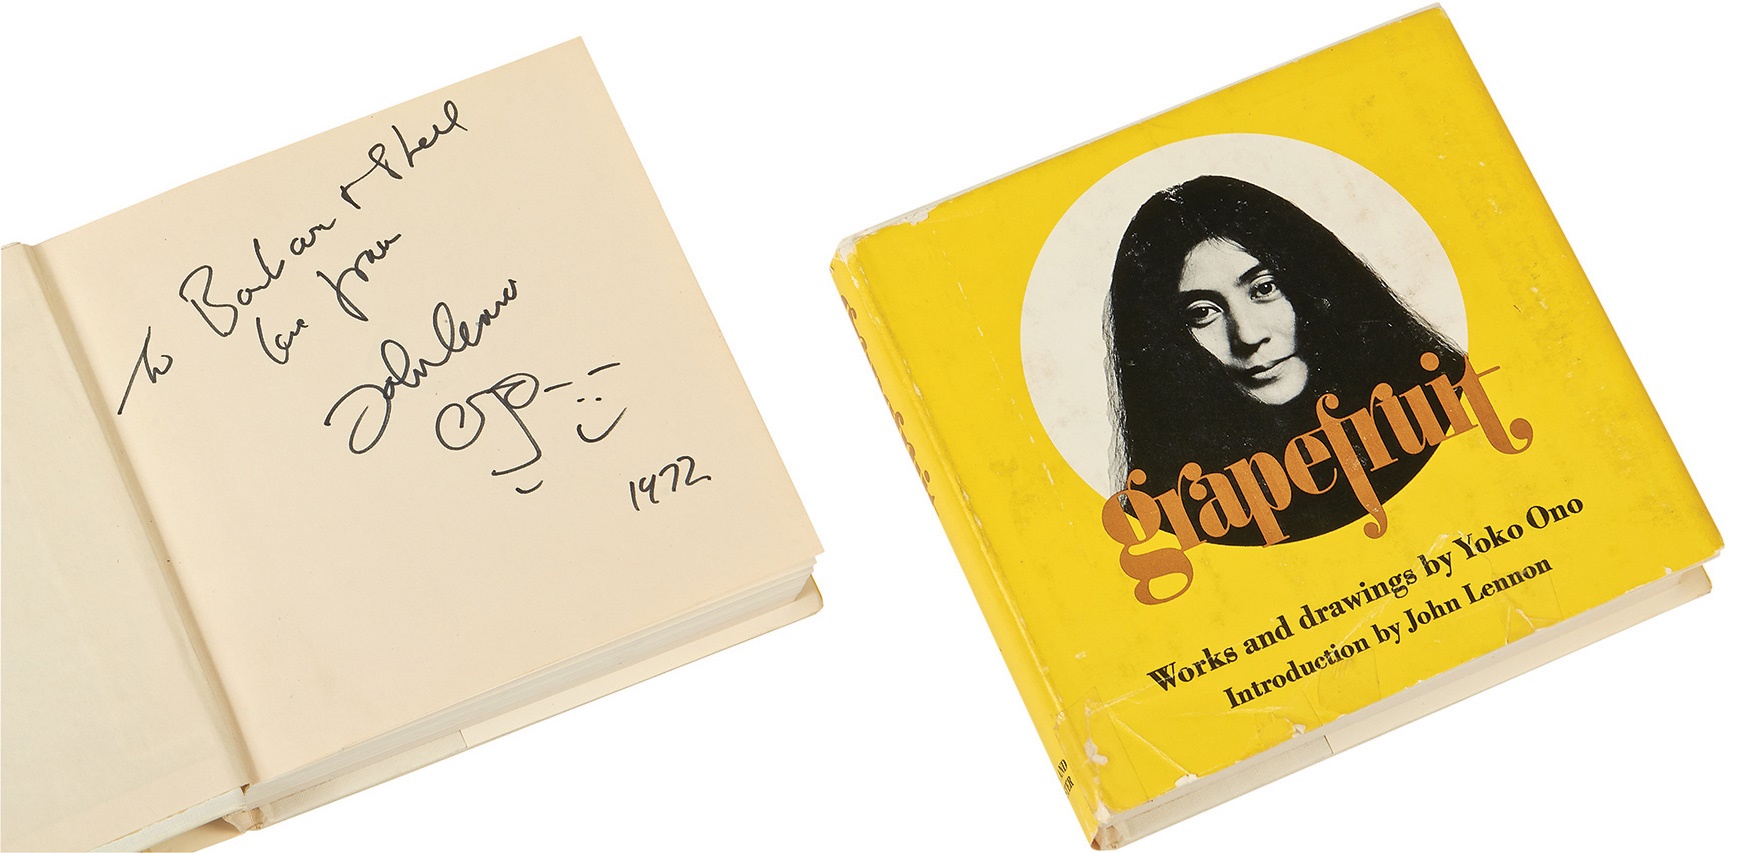 Rock 'N' Roll - John Lennon 1972 Signed "Grapfruit" With Splendid Caricature